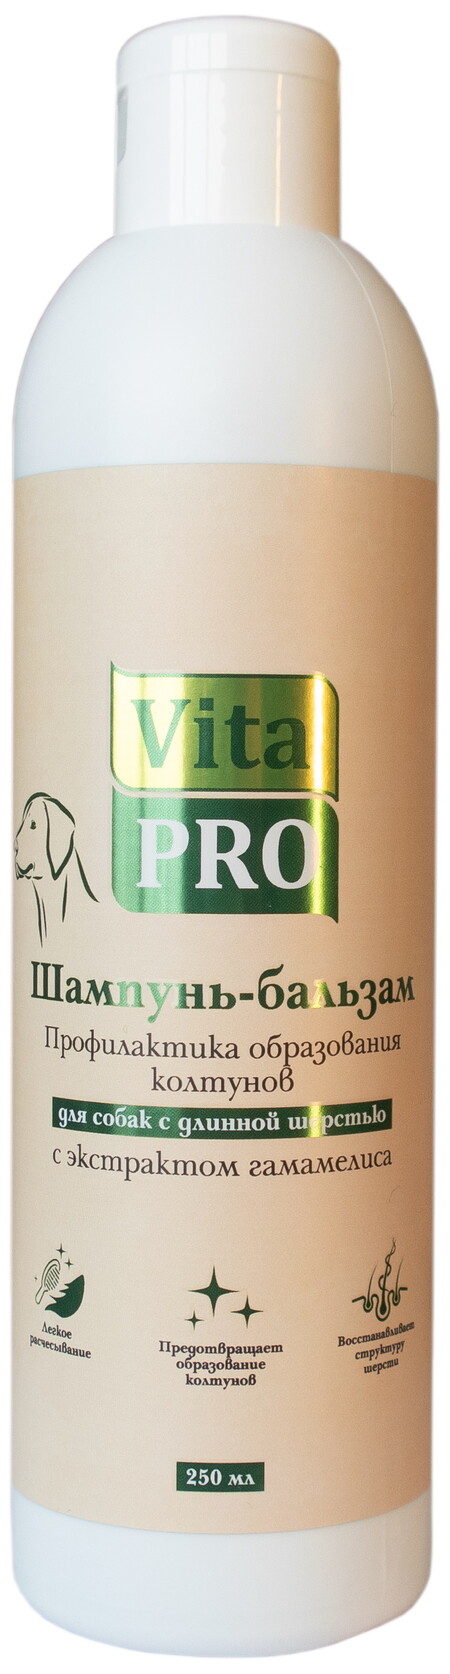 Vita Pro Профилактика колтунов 250 мл шампунь-бальзам для собак с длинной шерстью с экстрактом гамамелиса